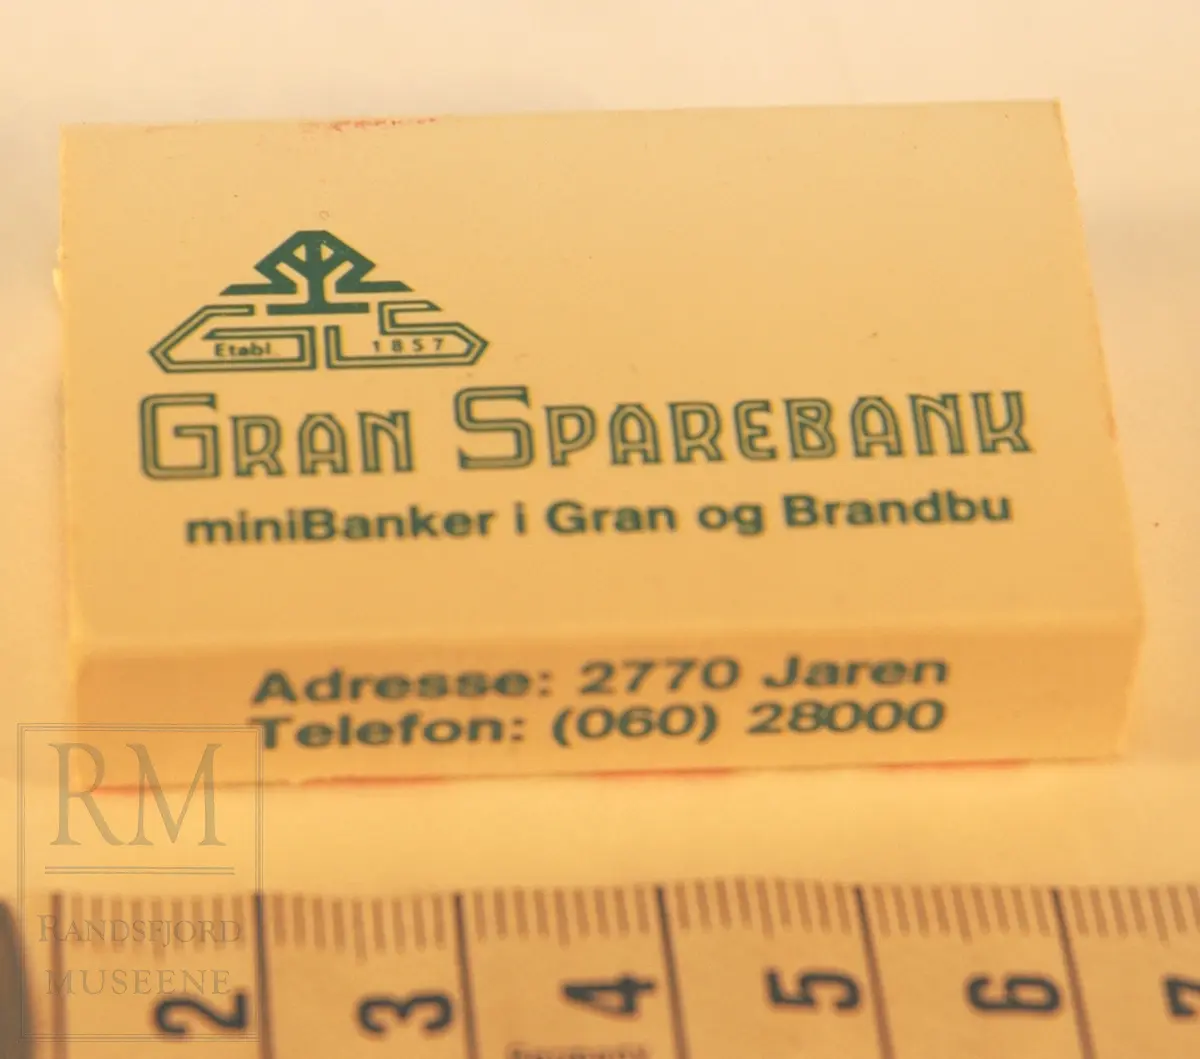 Reklameeske Gran Sparebank. Papp - hvit - brettet og limt sammen, med skuff med fyrstikker. Rivflate på en side. 